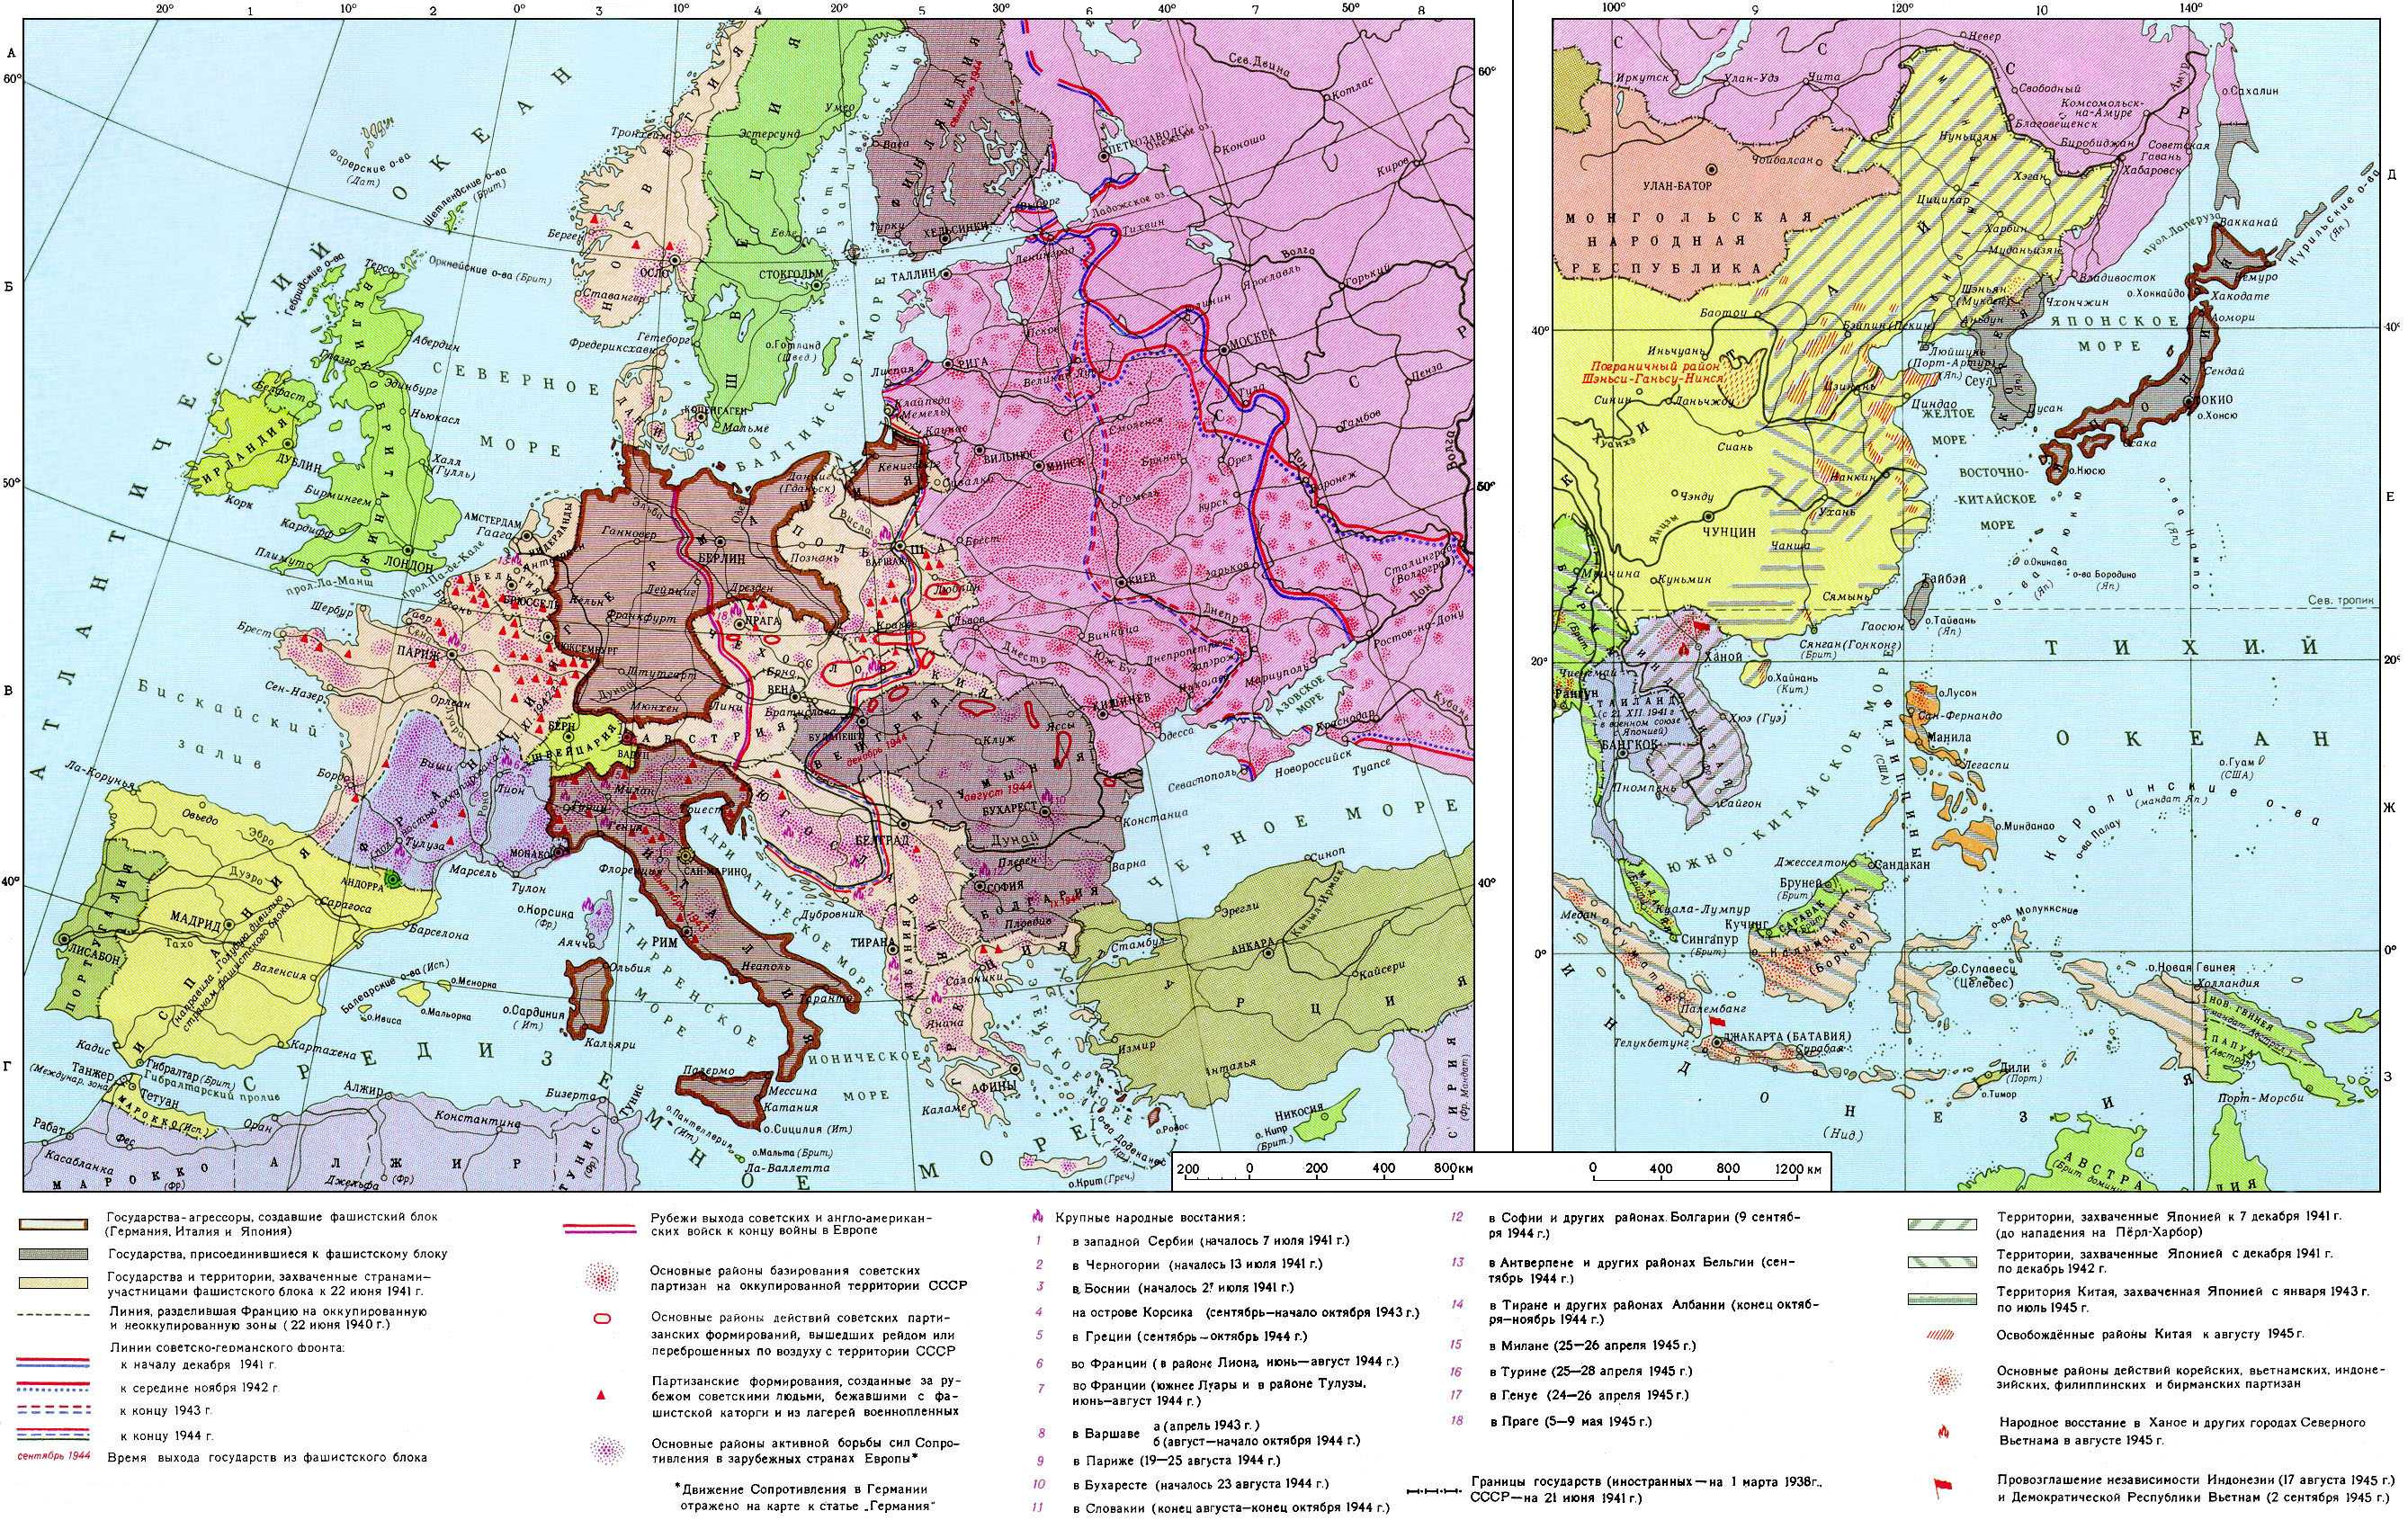 Выделите цветом территории германии и ее союзников. Карта Европы после 2 мировой войны. Карта Европы перед 2 мировой войной. Карта Европы до начала второй мировой войны. Карта СССР до второй мировой войны.